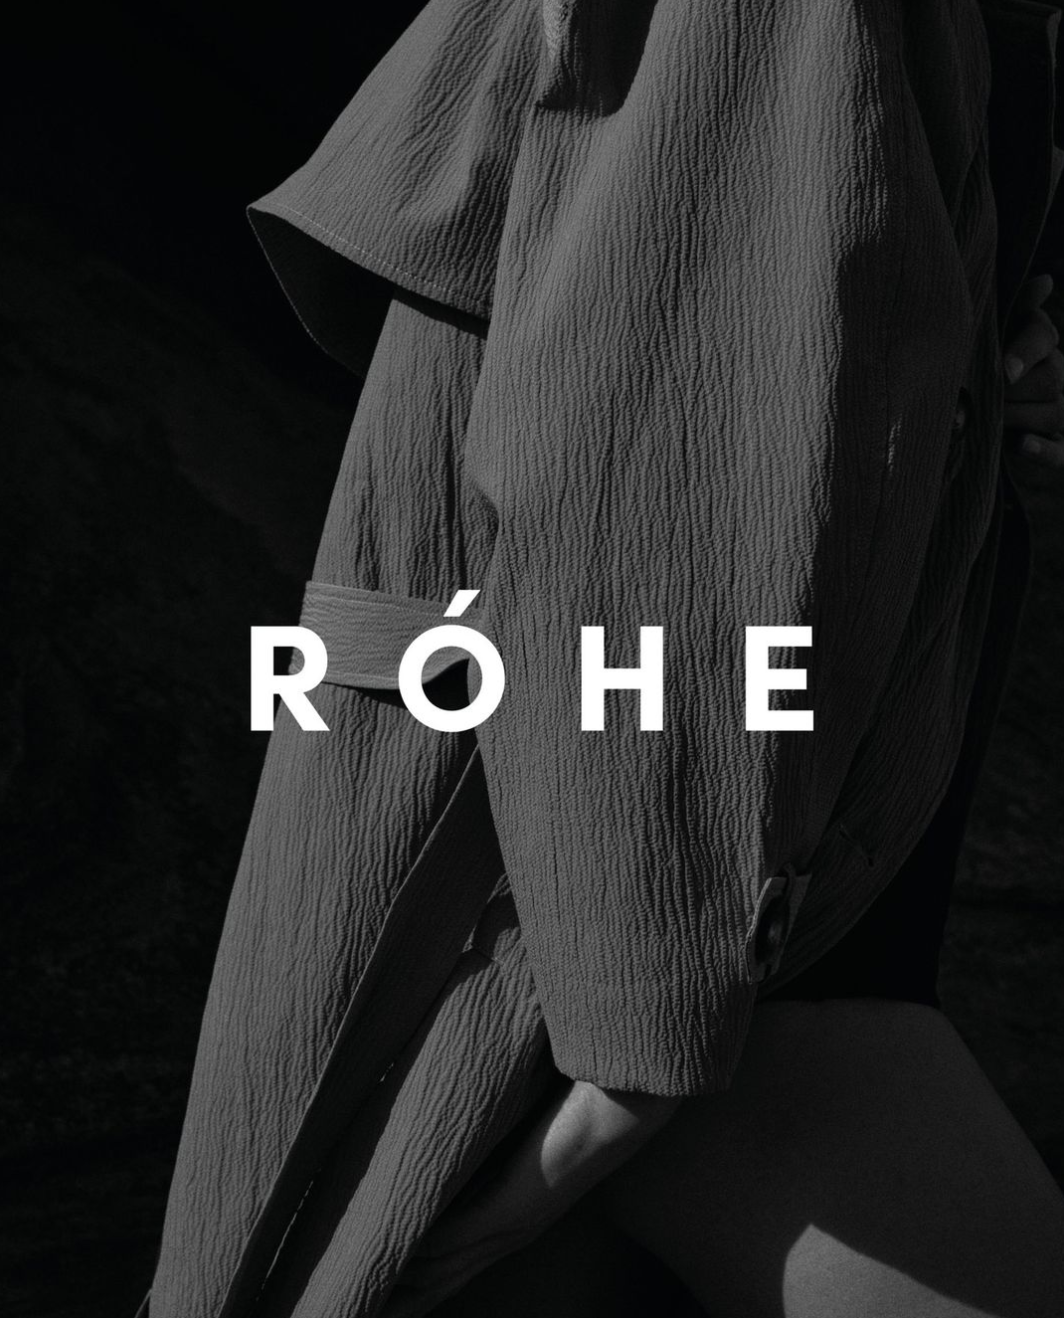 Róhe – Artistry meets Innovation